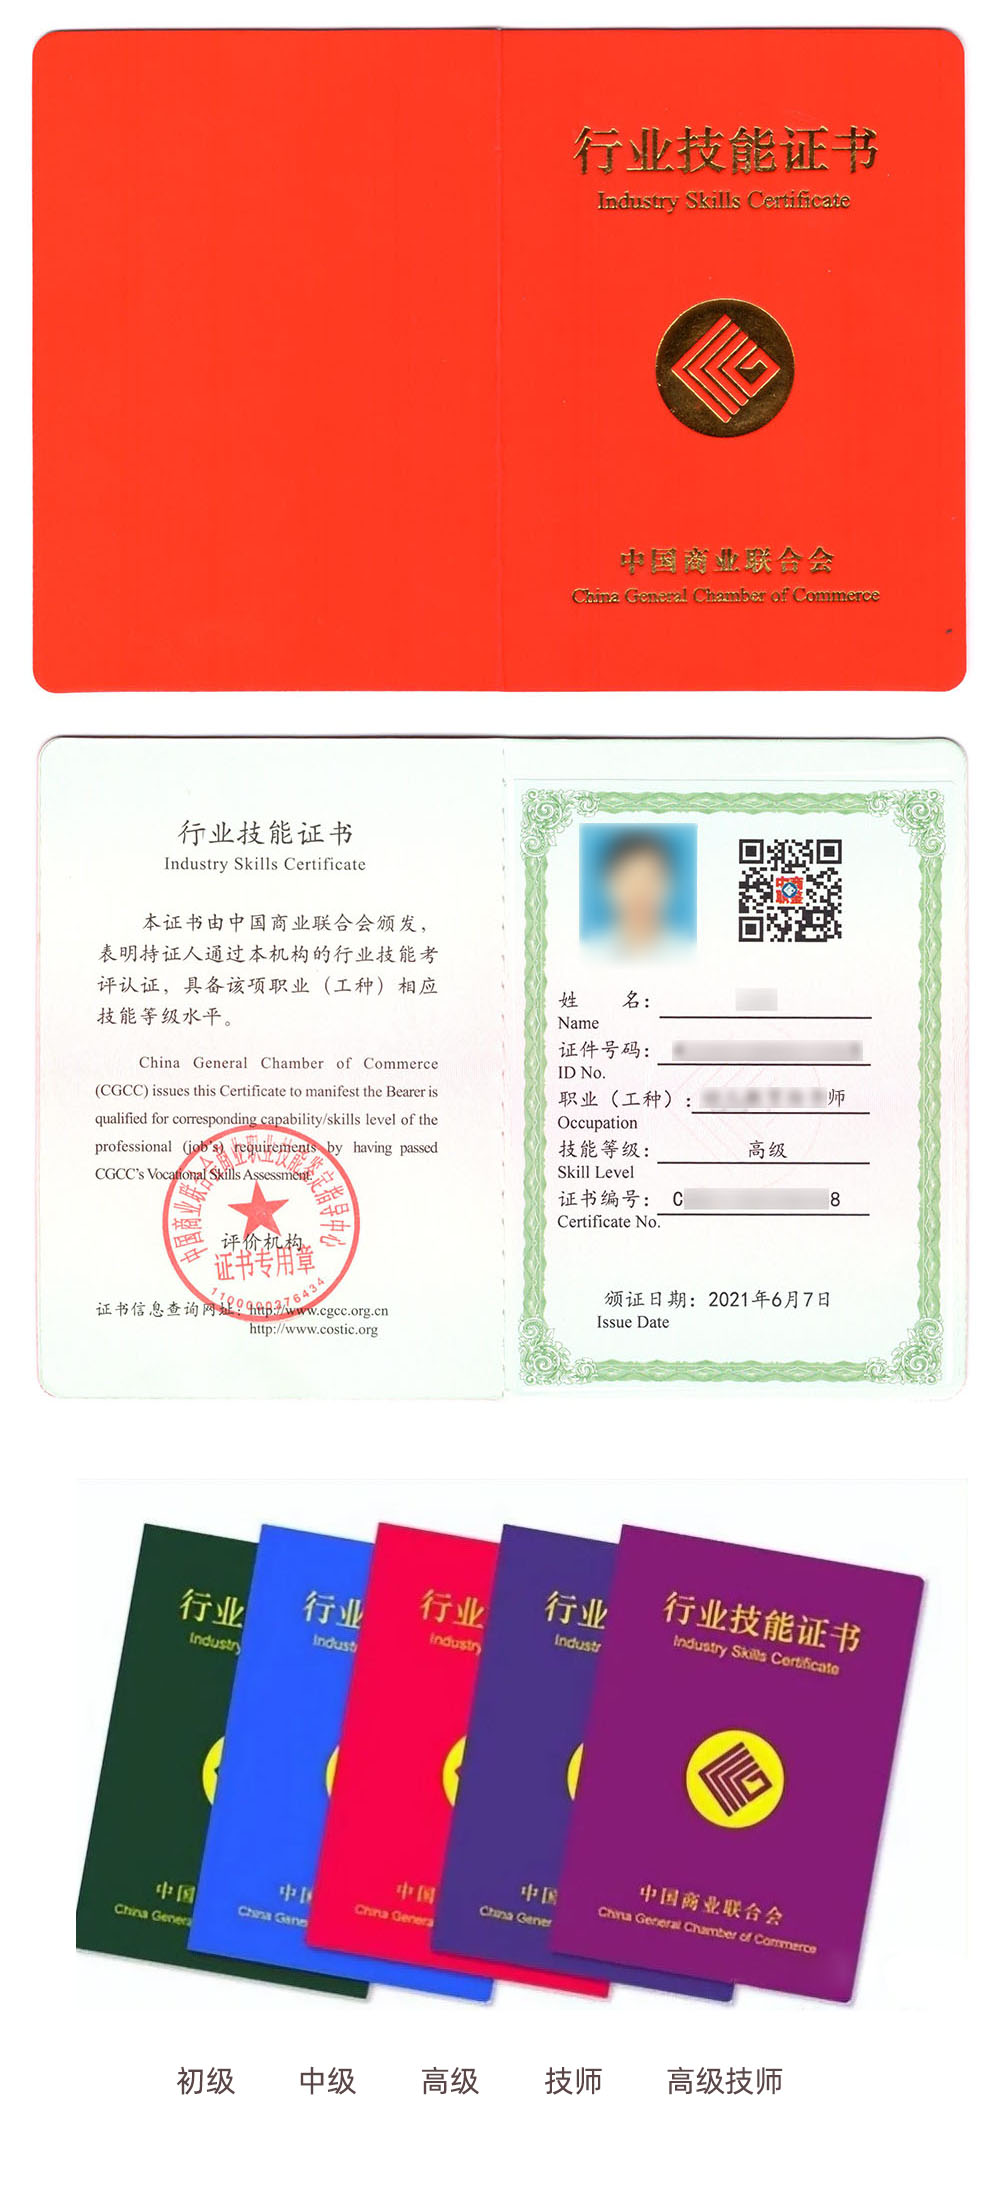 中国商业联合会商业职业技能鉴定中心 行业技能证书 电子政务师证证书样本